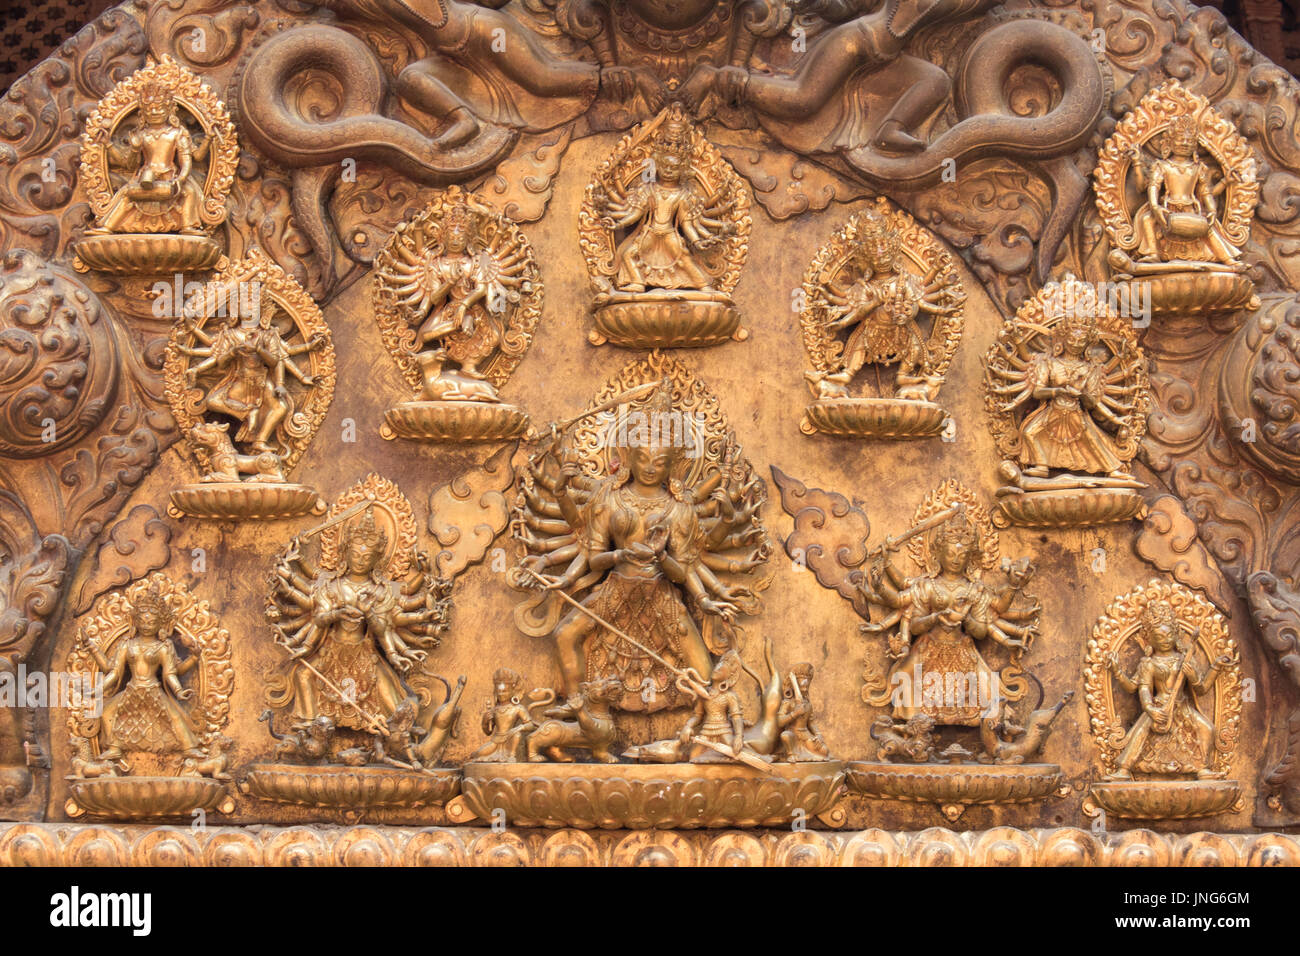 La sculpture dorée de serpents, les serpents et les dieux au-dessus de l'entrée de Taleju Bhawani Temple, Mul Chowk, Patan Durbar Square Katmandou Népal Banque D'Images